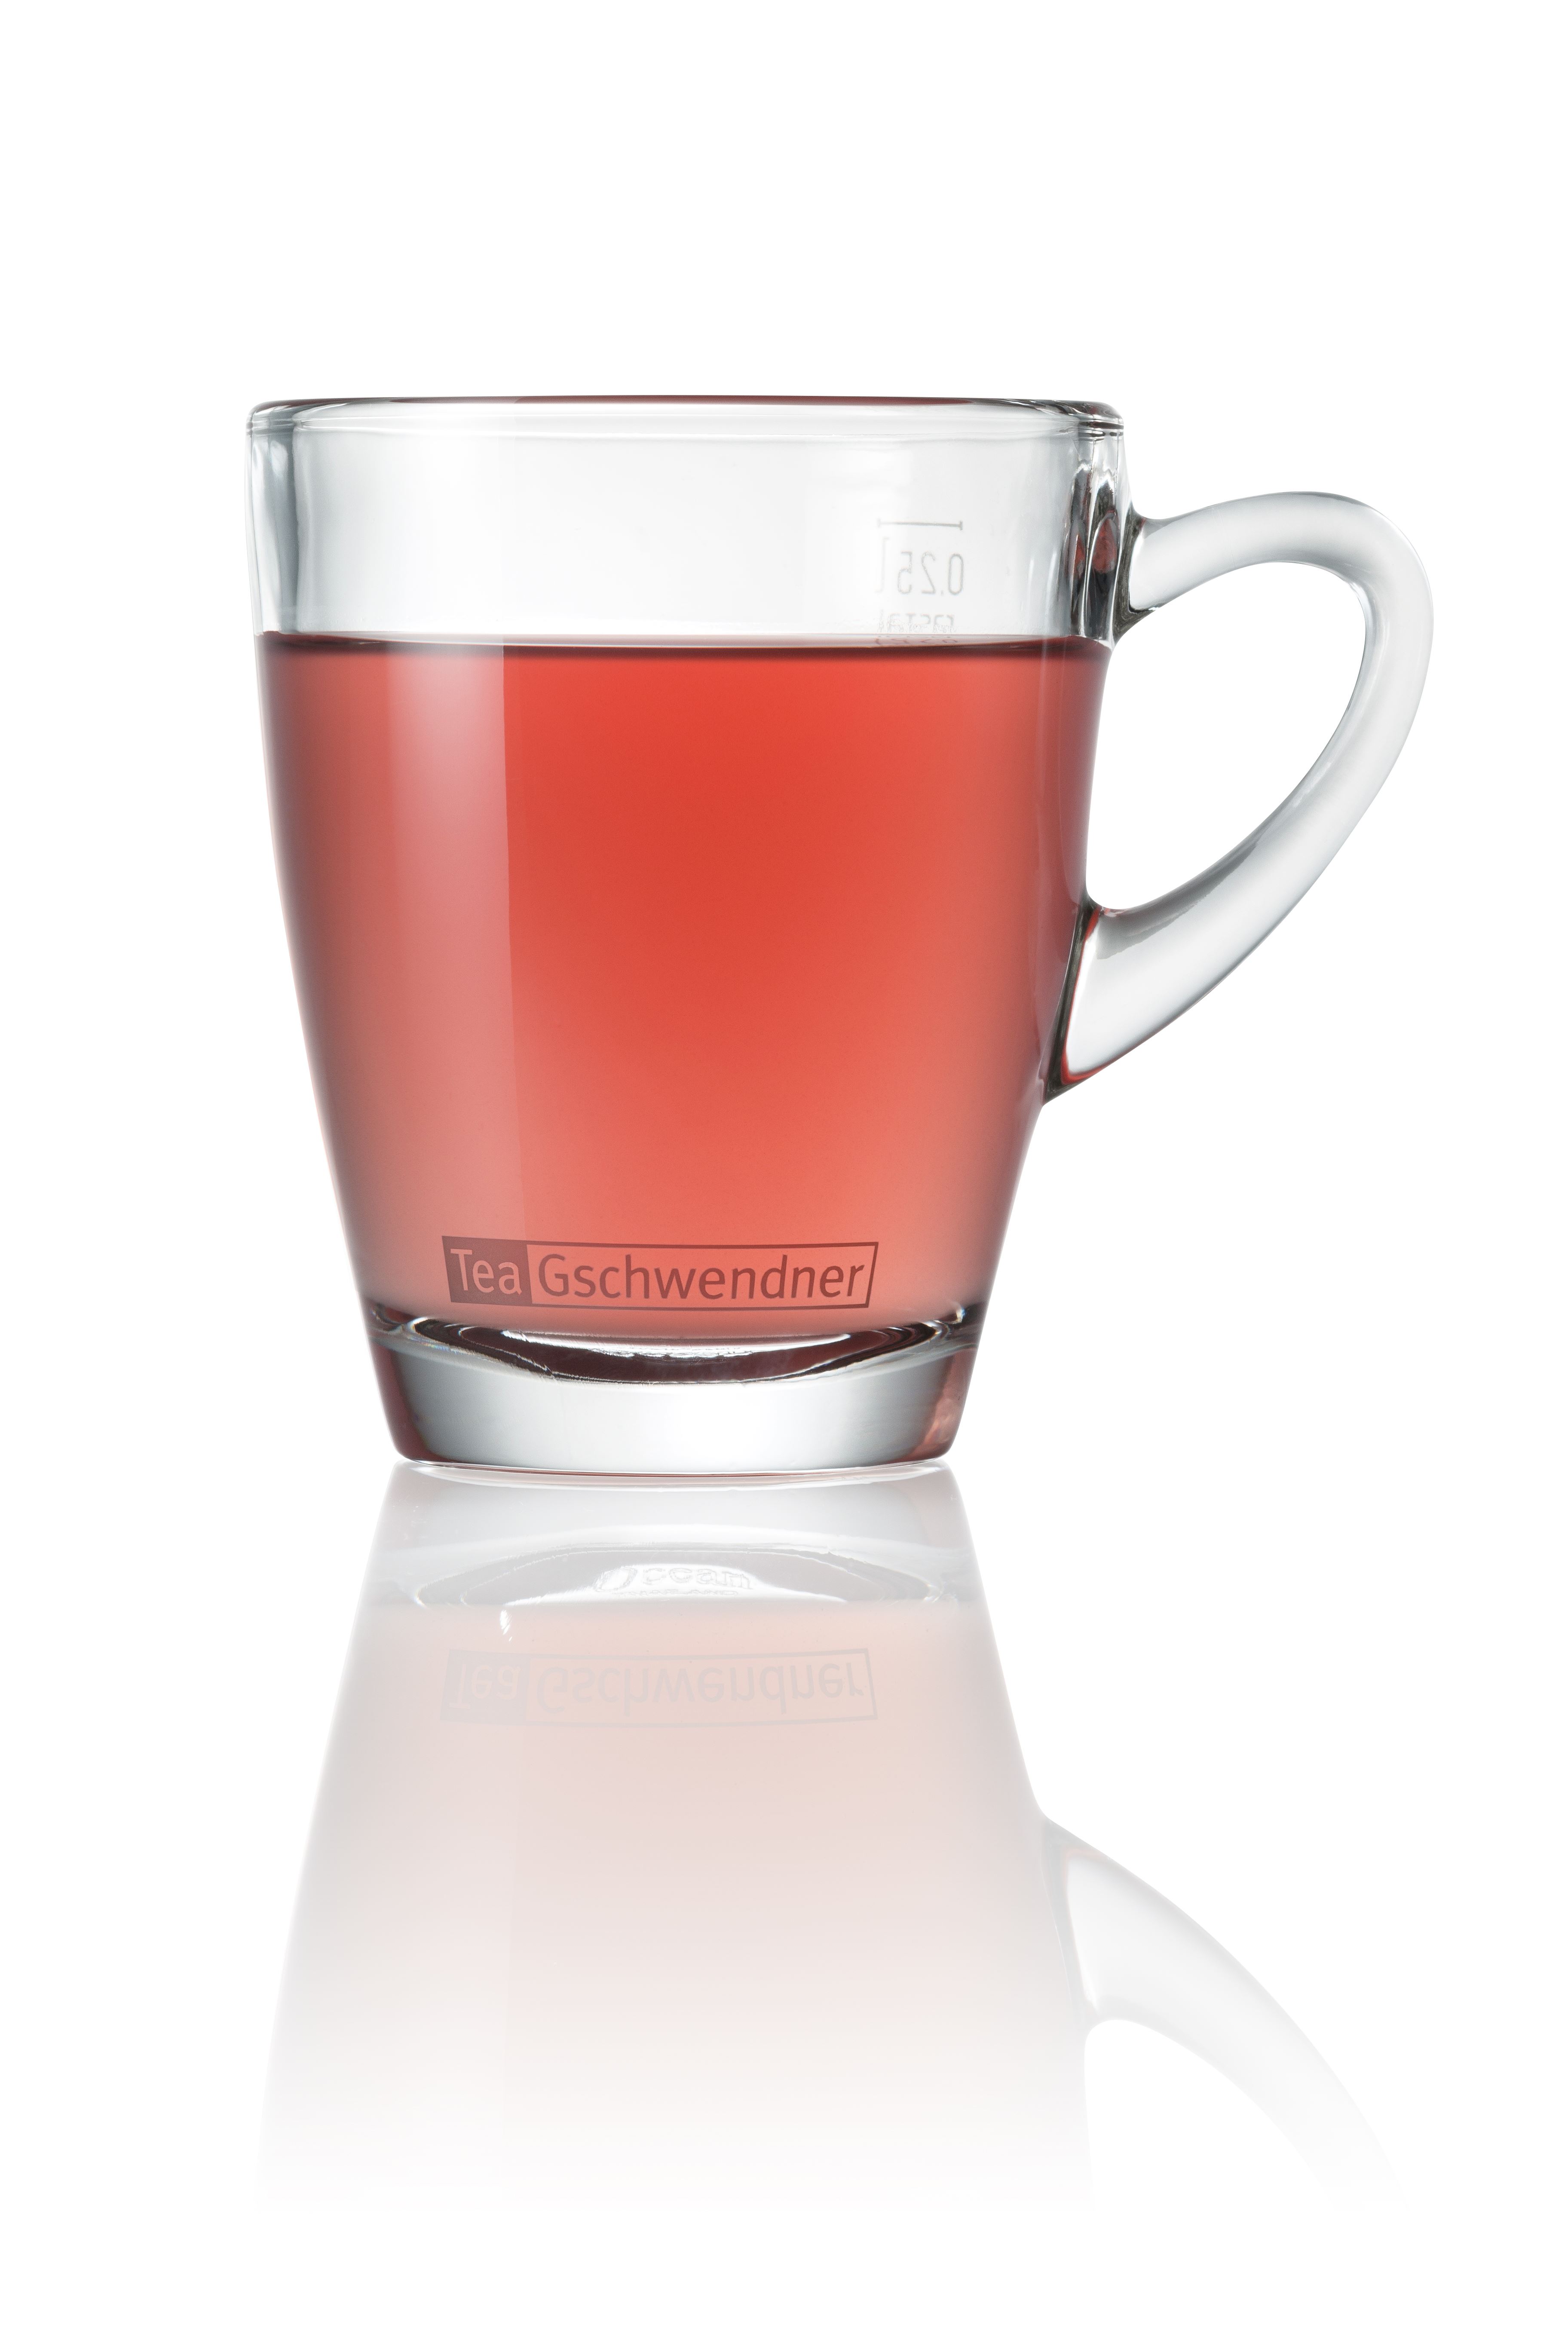 Linden Blossom Tea